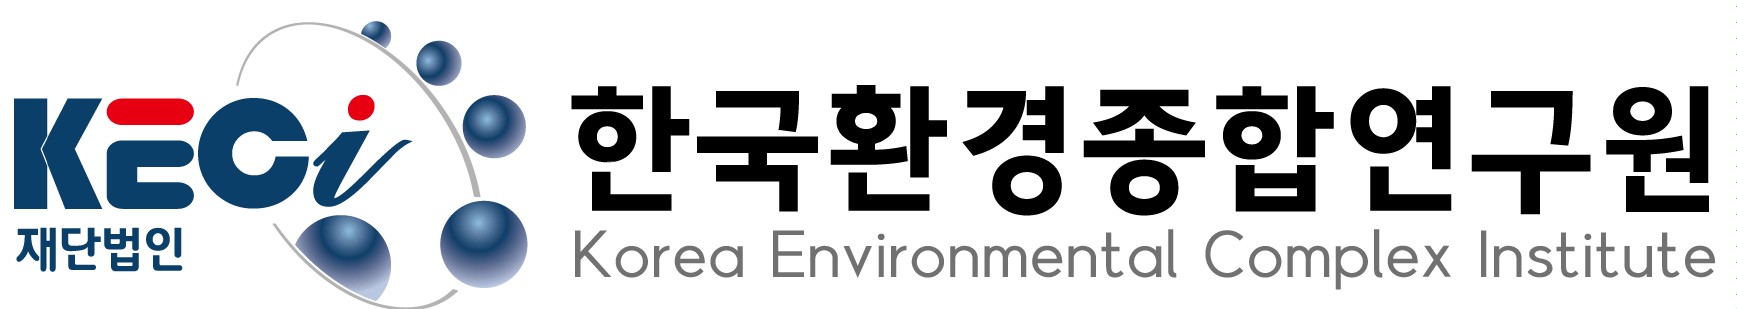 (재)한국환경종합연구원의 기업로고